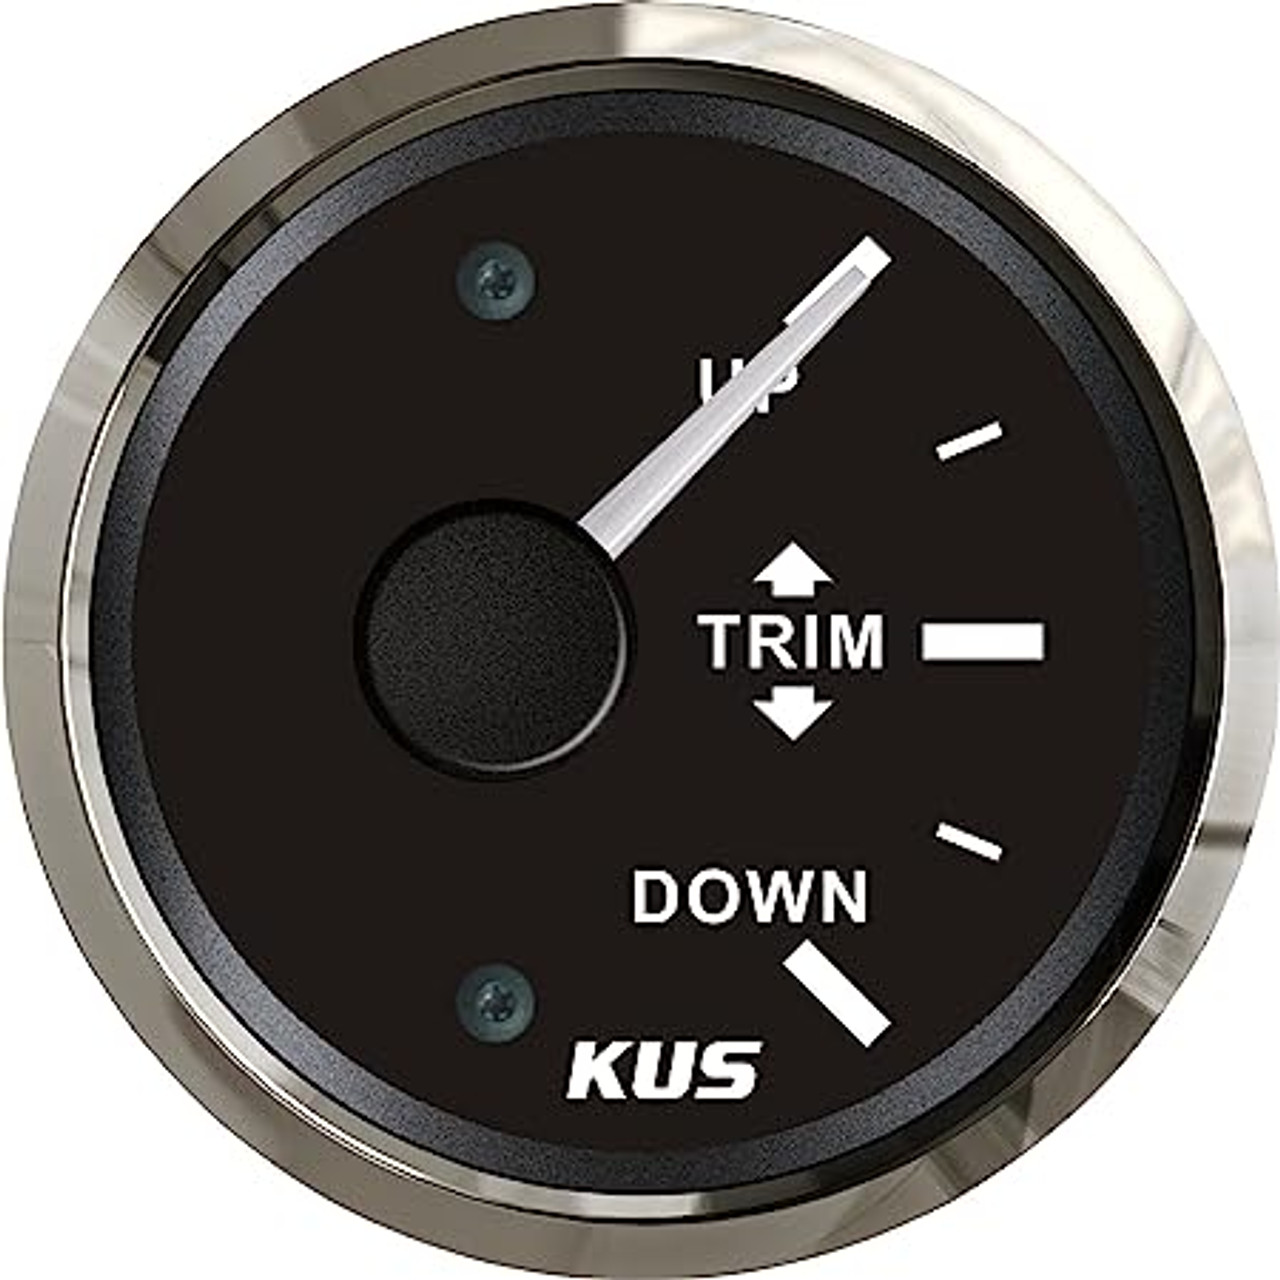 KUS Trim gauge, Black face